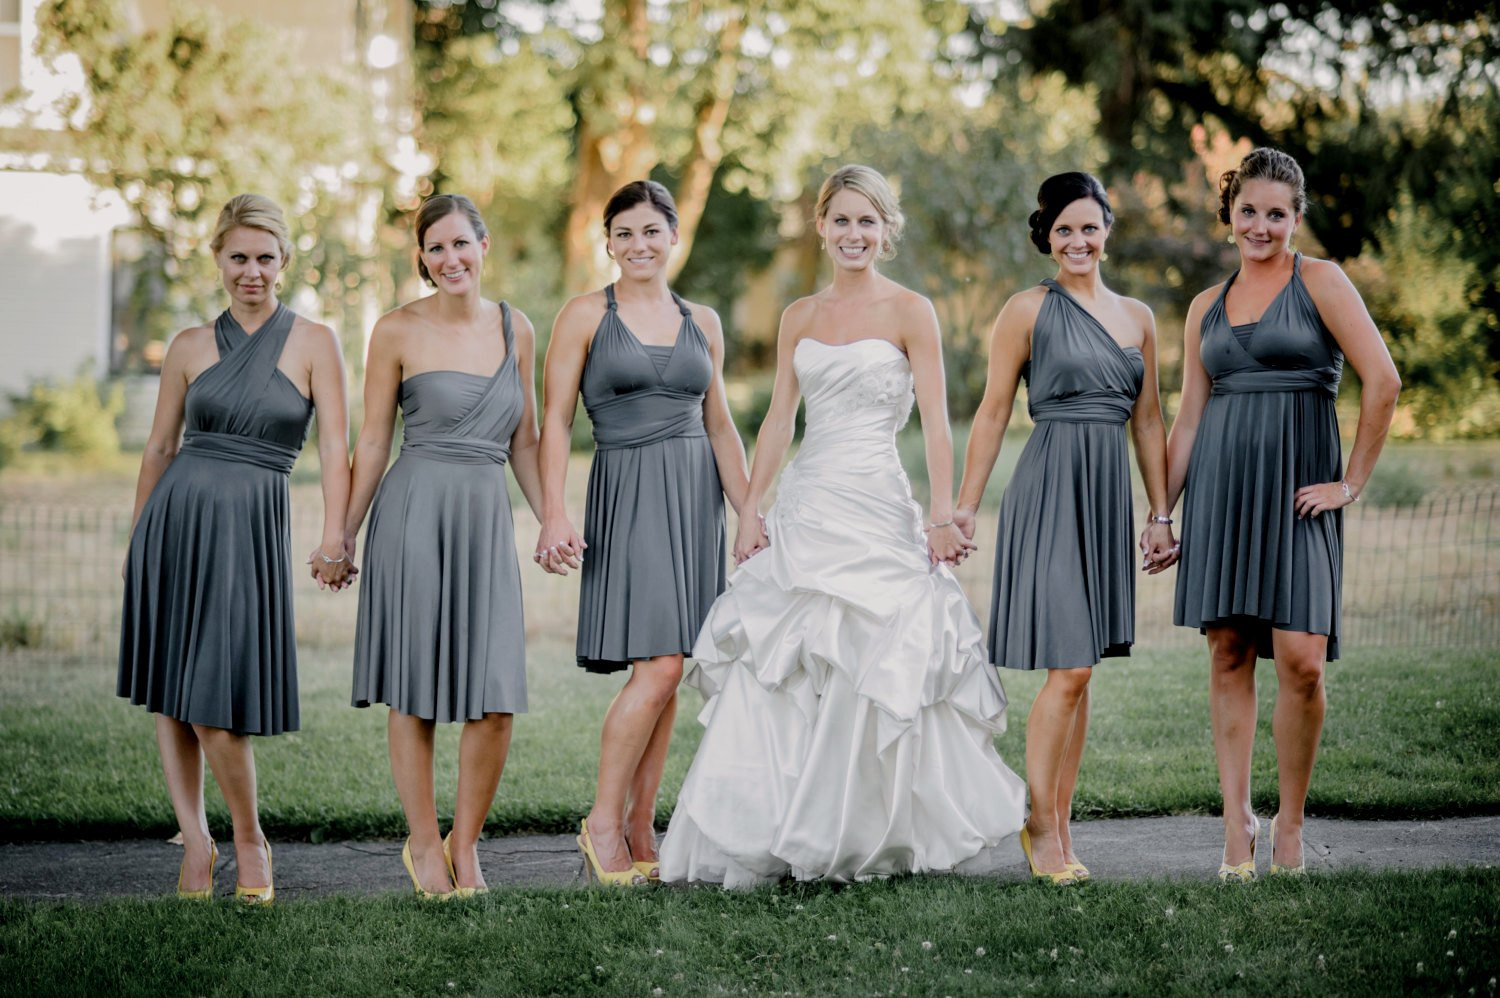 bridesmaid dress worn different ways | via https://emmalinebride.com/bridesmaids/bridesmaid-dress-worn-different-ways/